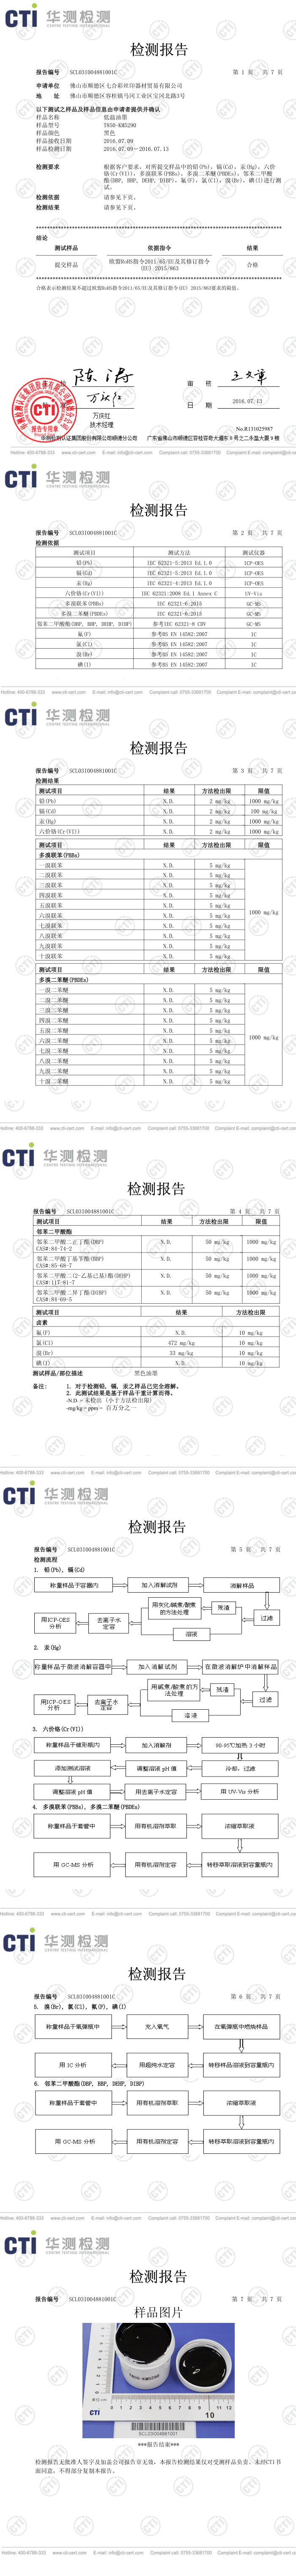 七合彩T850-KM5290卤素及ROHS报告中文